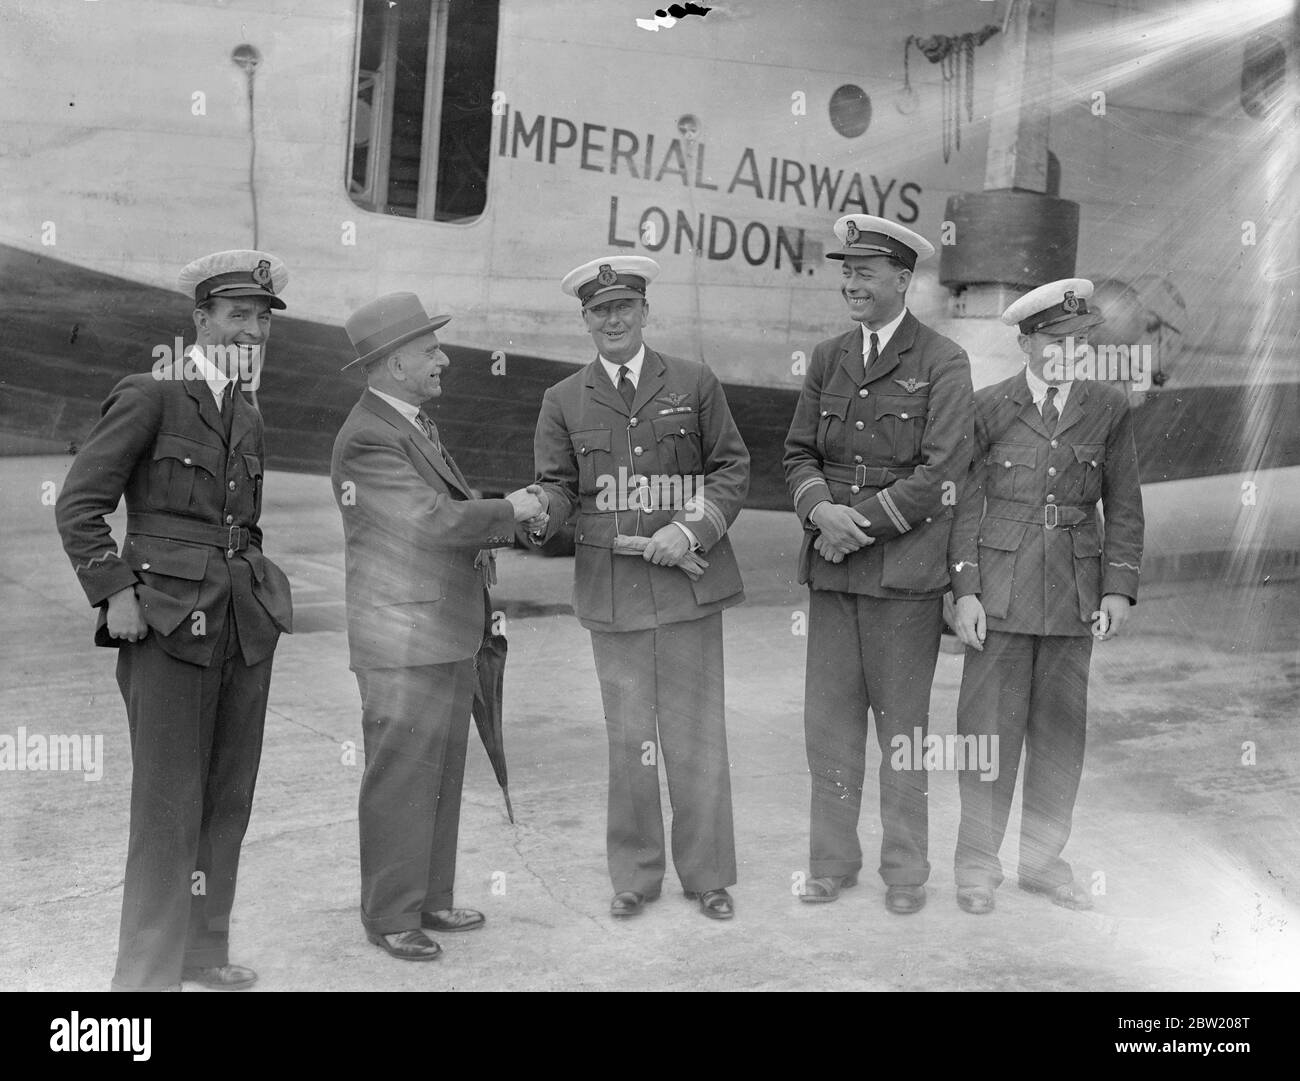 La nave volante della Imperial Airways Caledonia è tornata a Southampton dalla base aerea di Foynes, Irlanda, dopo aver completato la sua prima doppietta sperimentale dell'Atlantico. L'attraversamento dell'oceano di ritorno è stato effettuato in 12 ore e 7 minuti. L'equipaggio [da sinistra a destra: Operatore radio Tommy Valetts, capitano A. S. Wilcockson, primo ufficiale Bowes, e operatore radio Hobbs] è stato accolto dal vice sindaco di Southampton, consigliere Saunders. 17 luglio 1937 Foto Stock